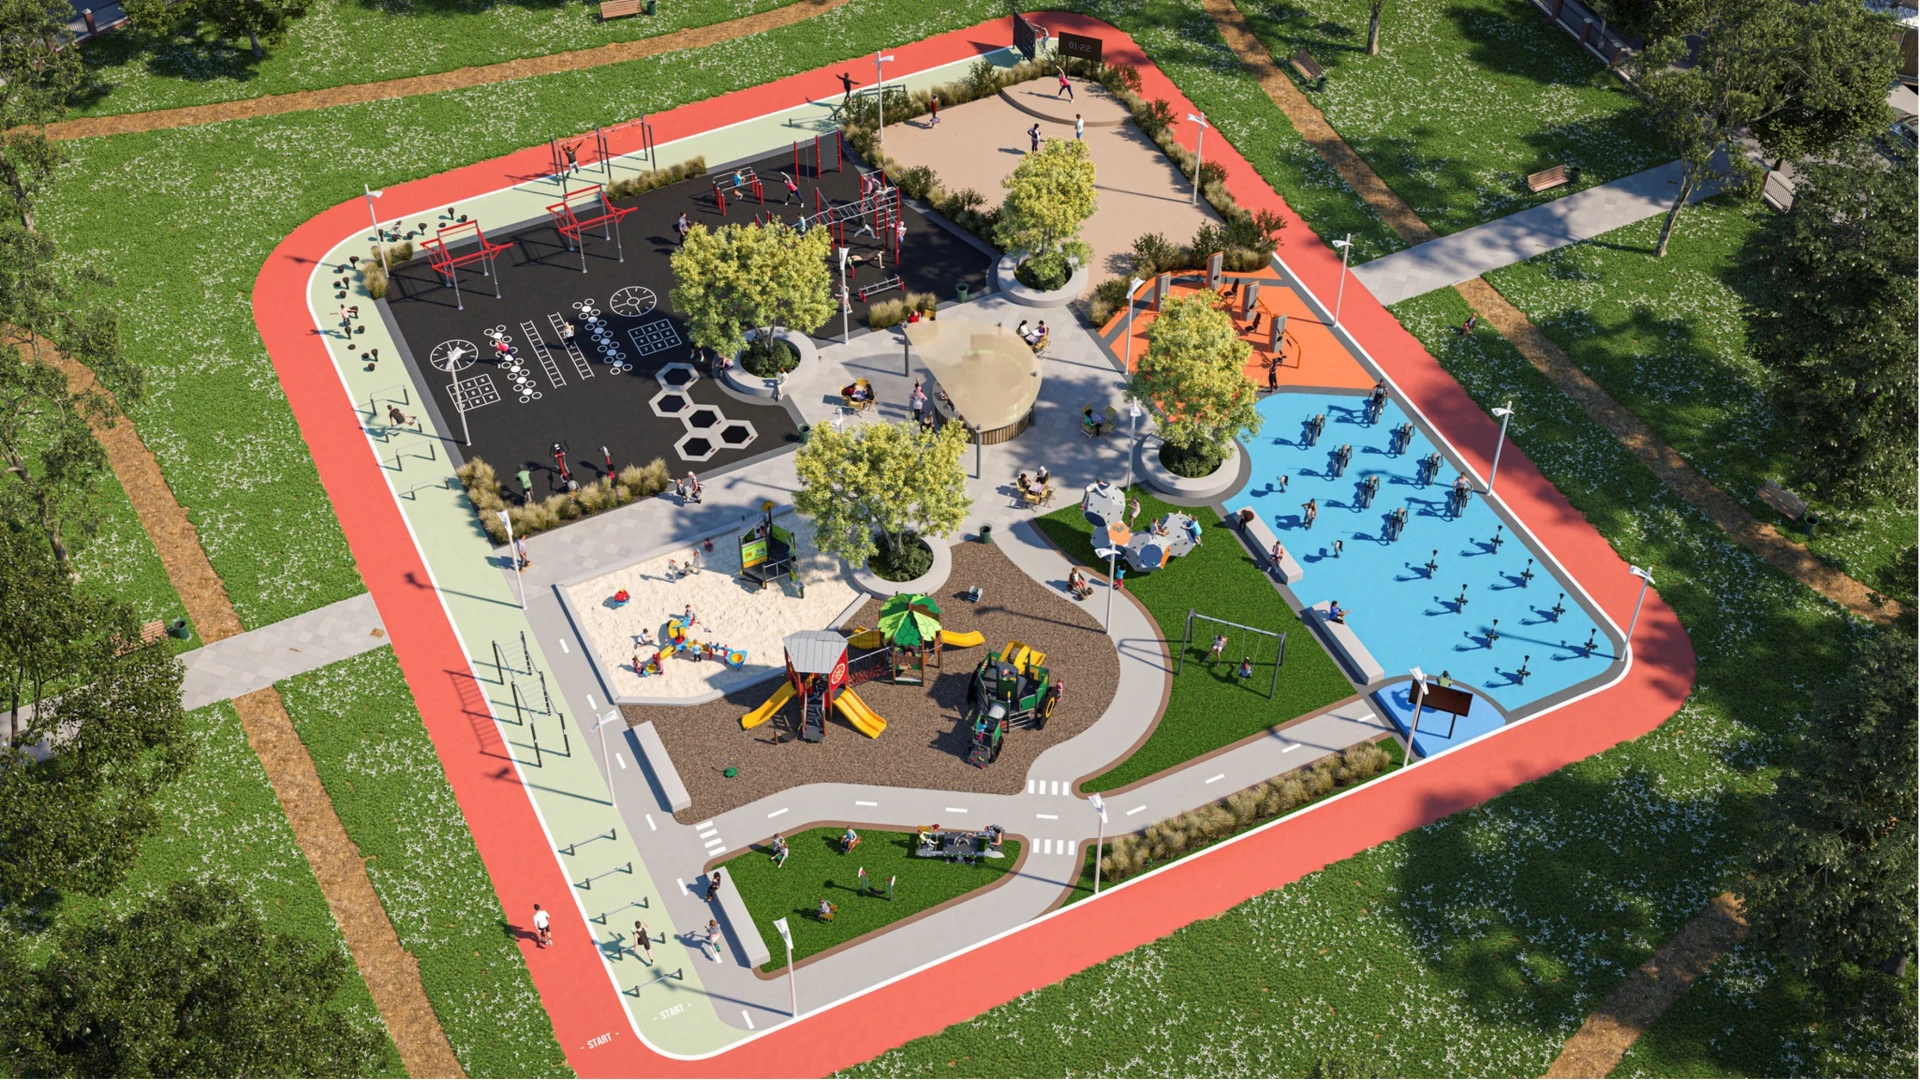 Vista aérea de una zona de juegos y un gimnasio al aire libre en un parque.